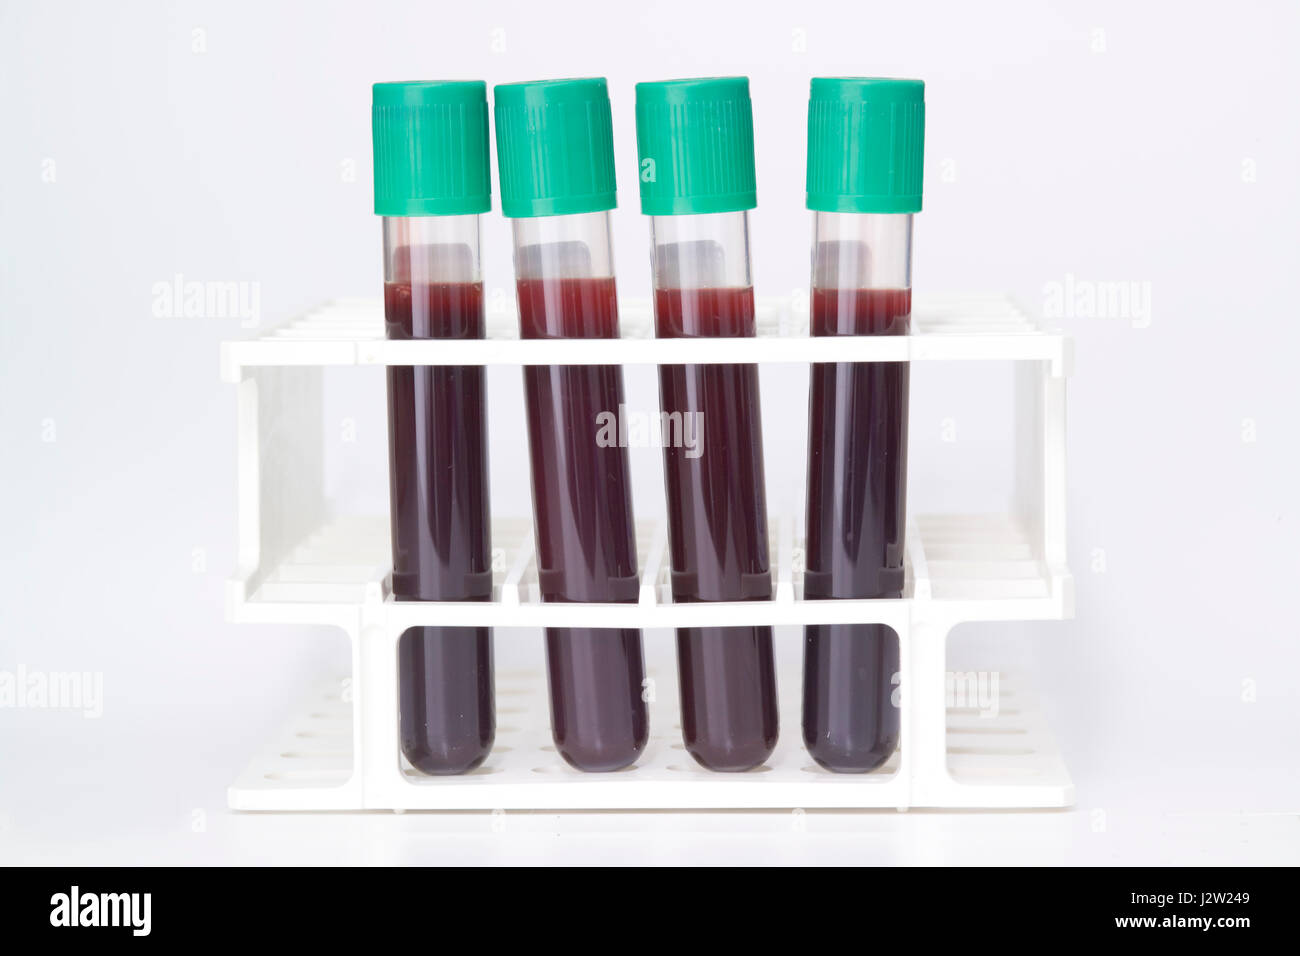 Baja presión de tubos vacutainer que contienen sangre para realizar pruebas Foto de stock